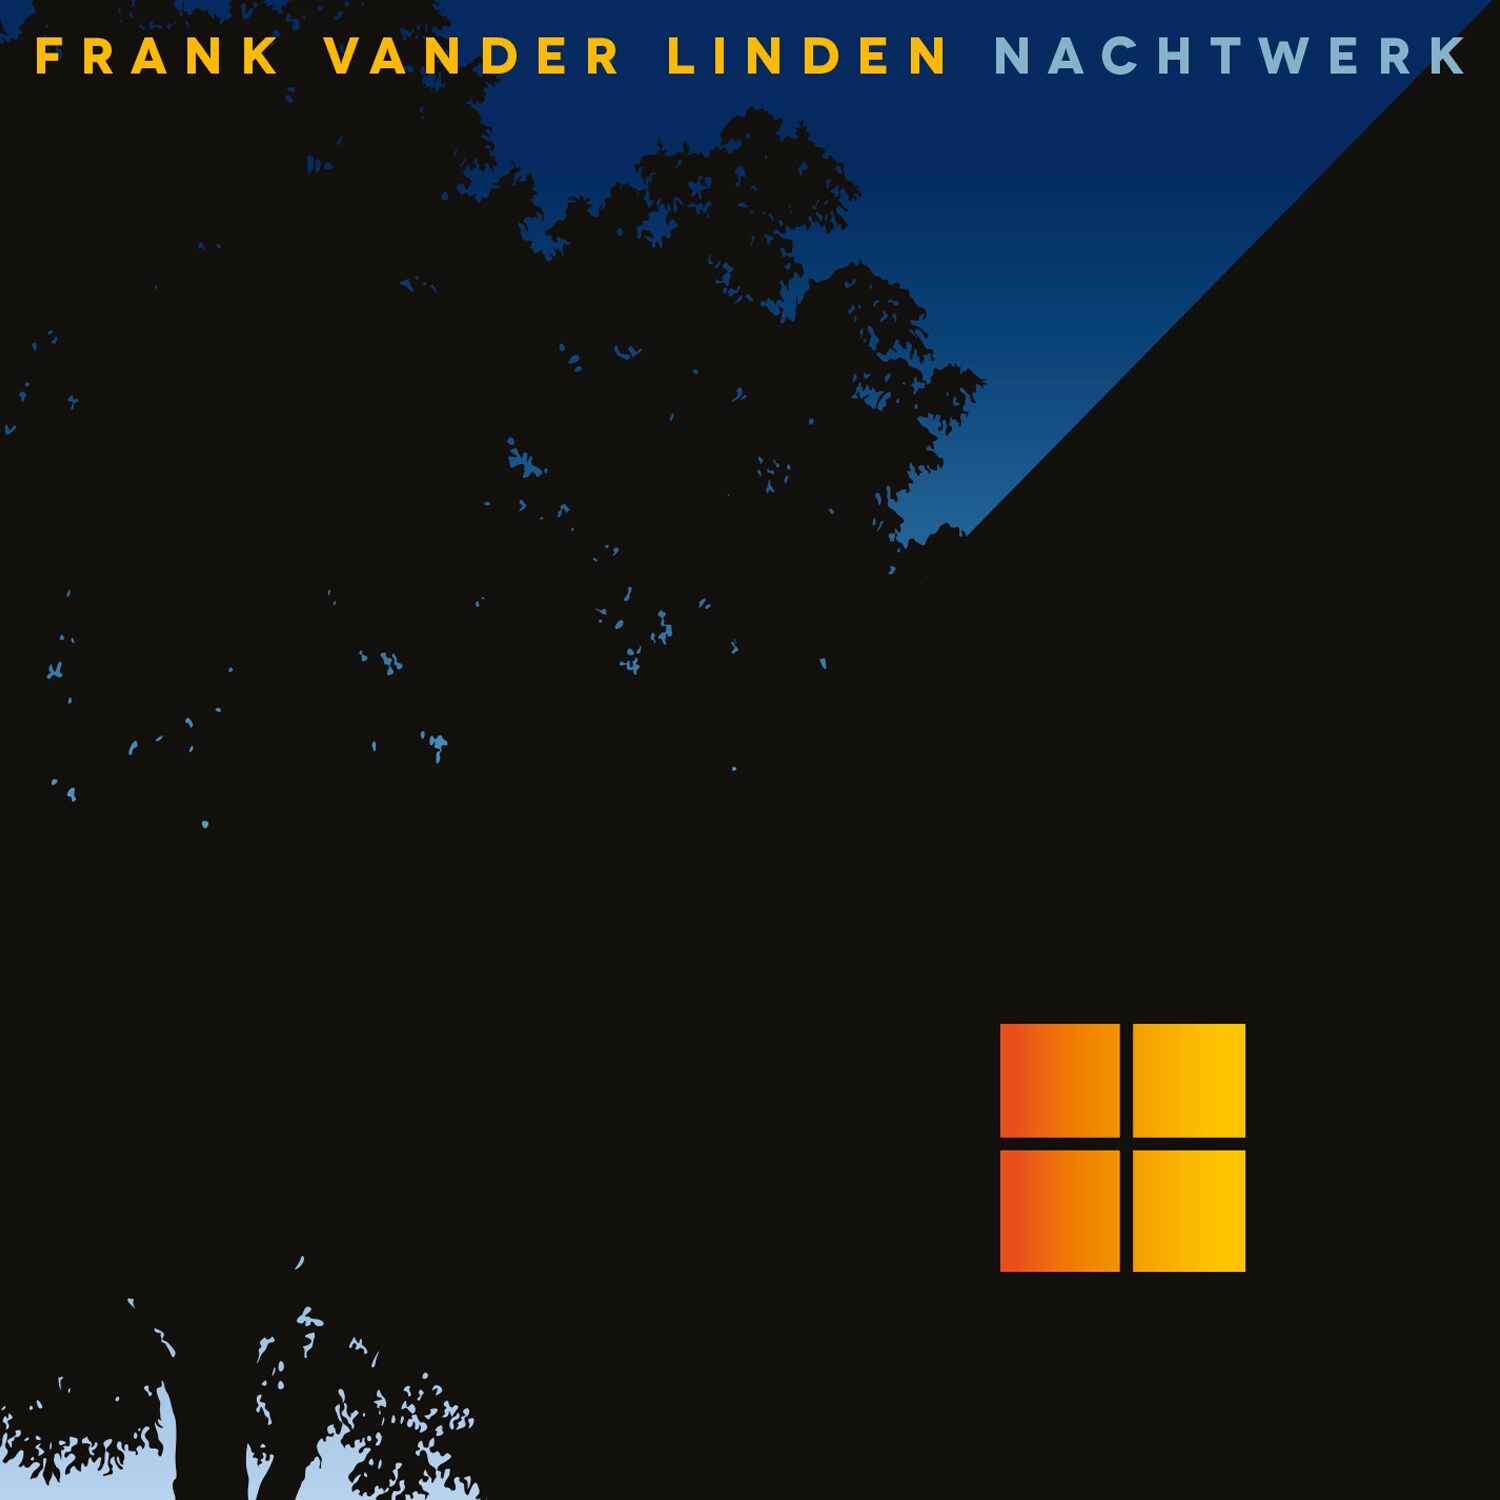 4. Frank Vander linden - Nachtwerk